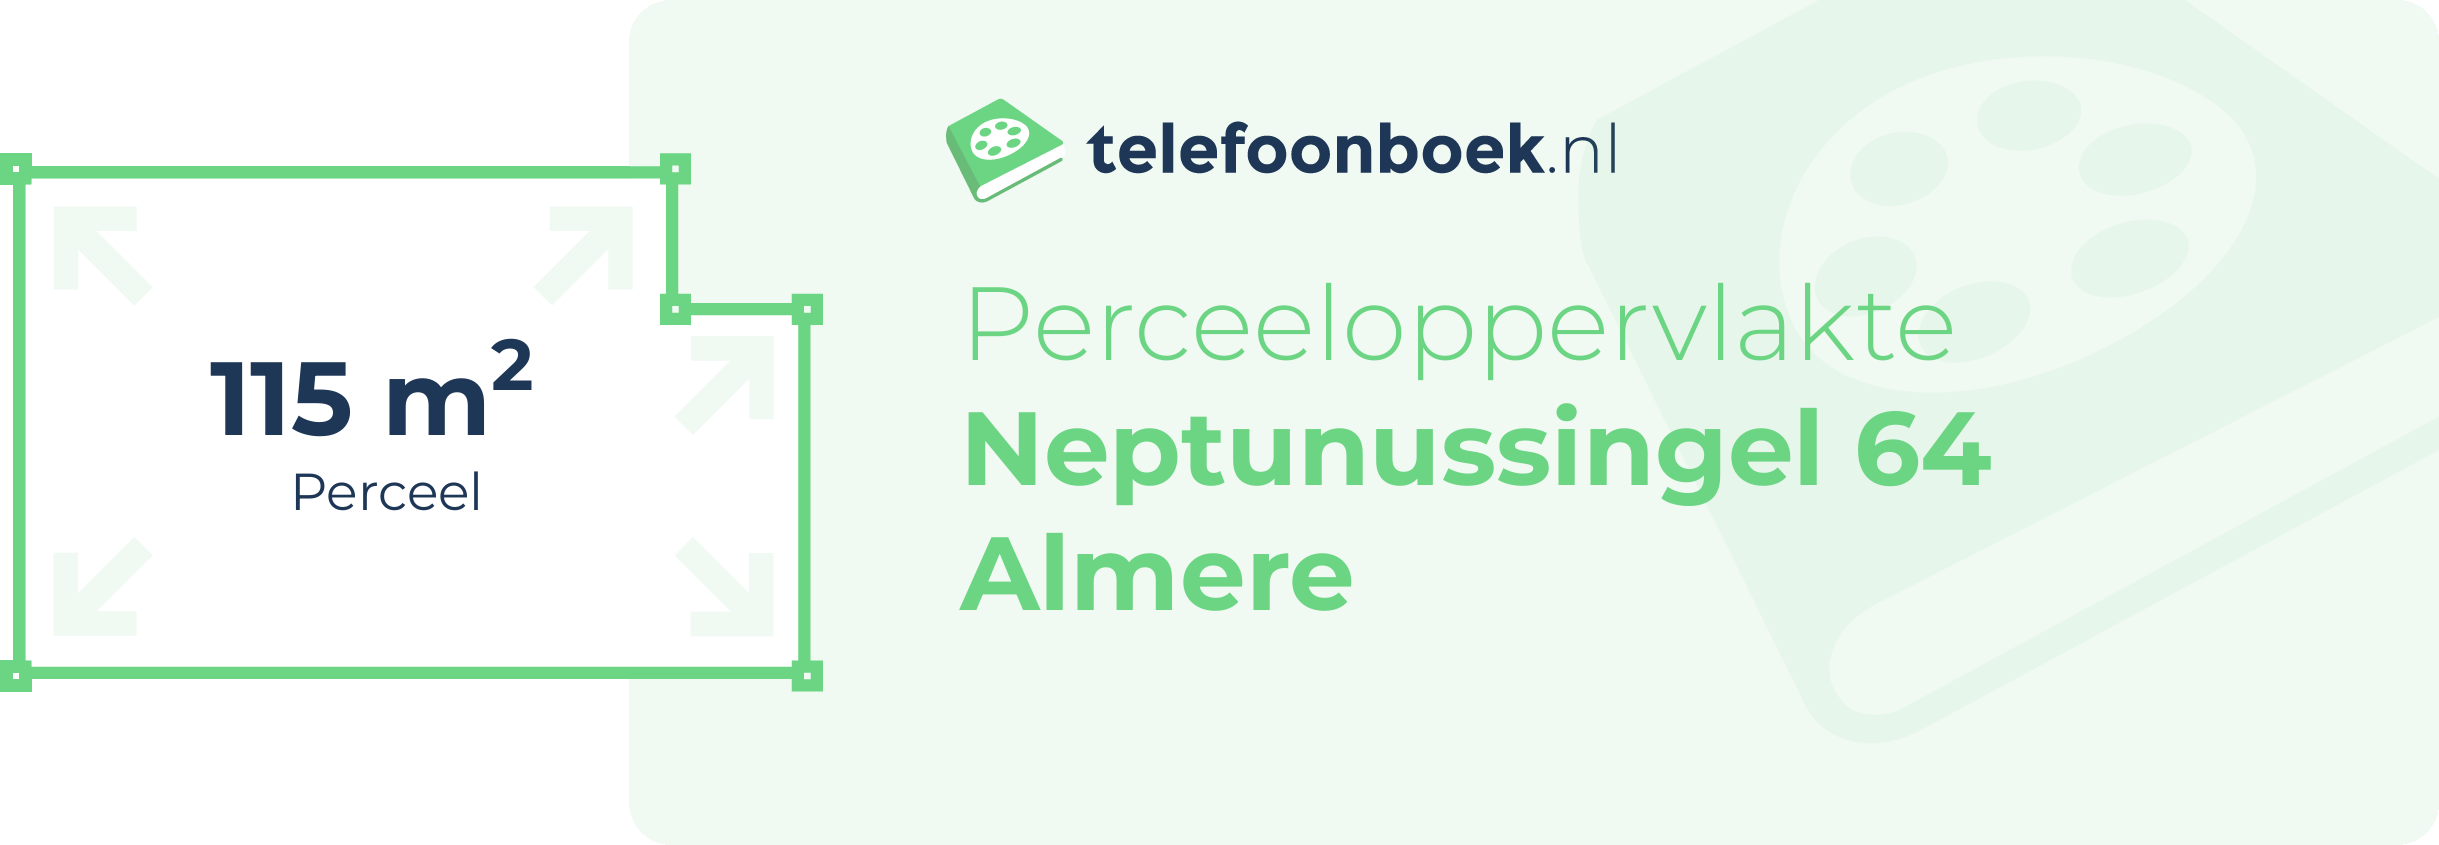 Perceeloppervlakte Neptunussingel 64 Almere